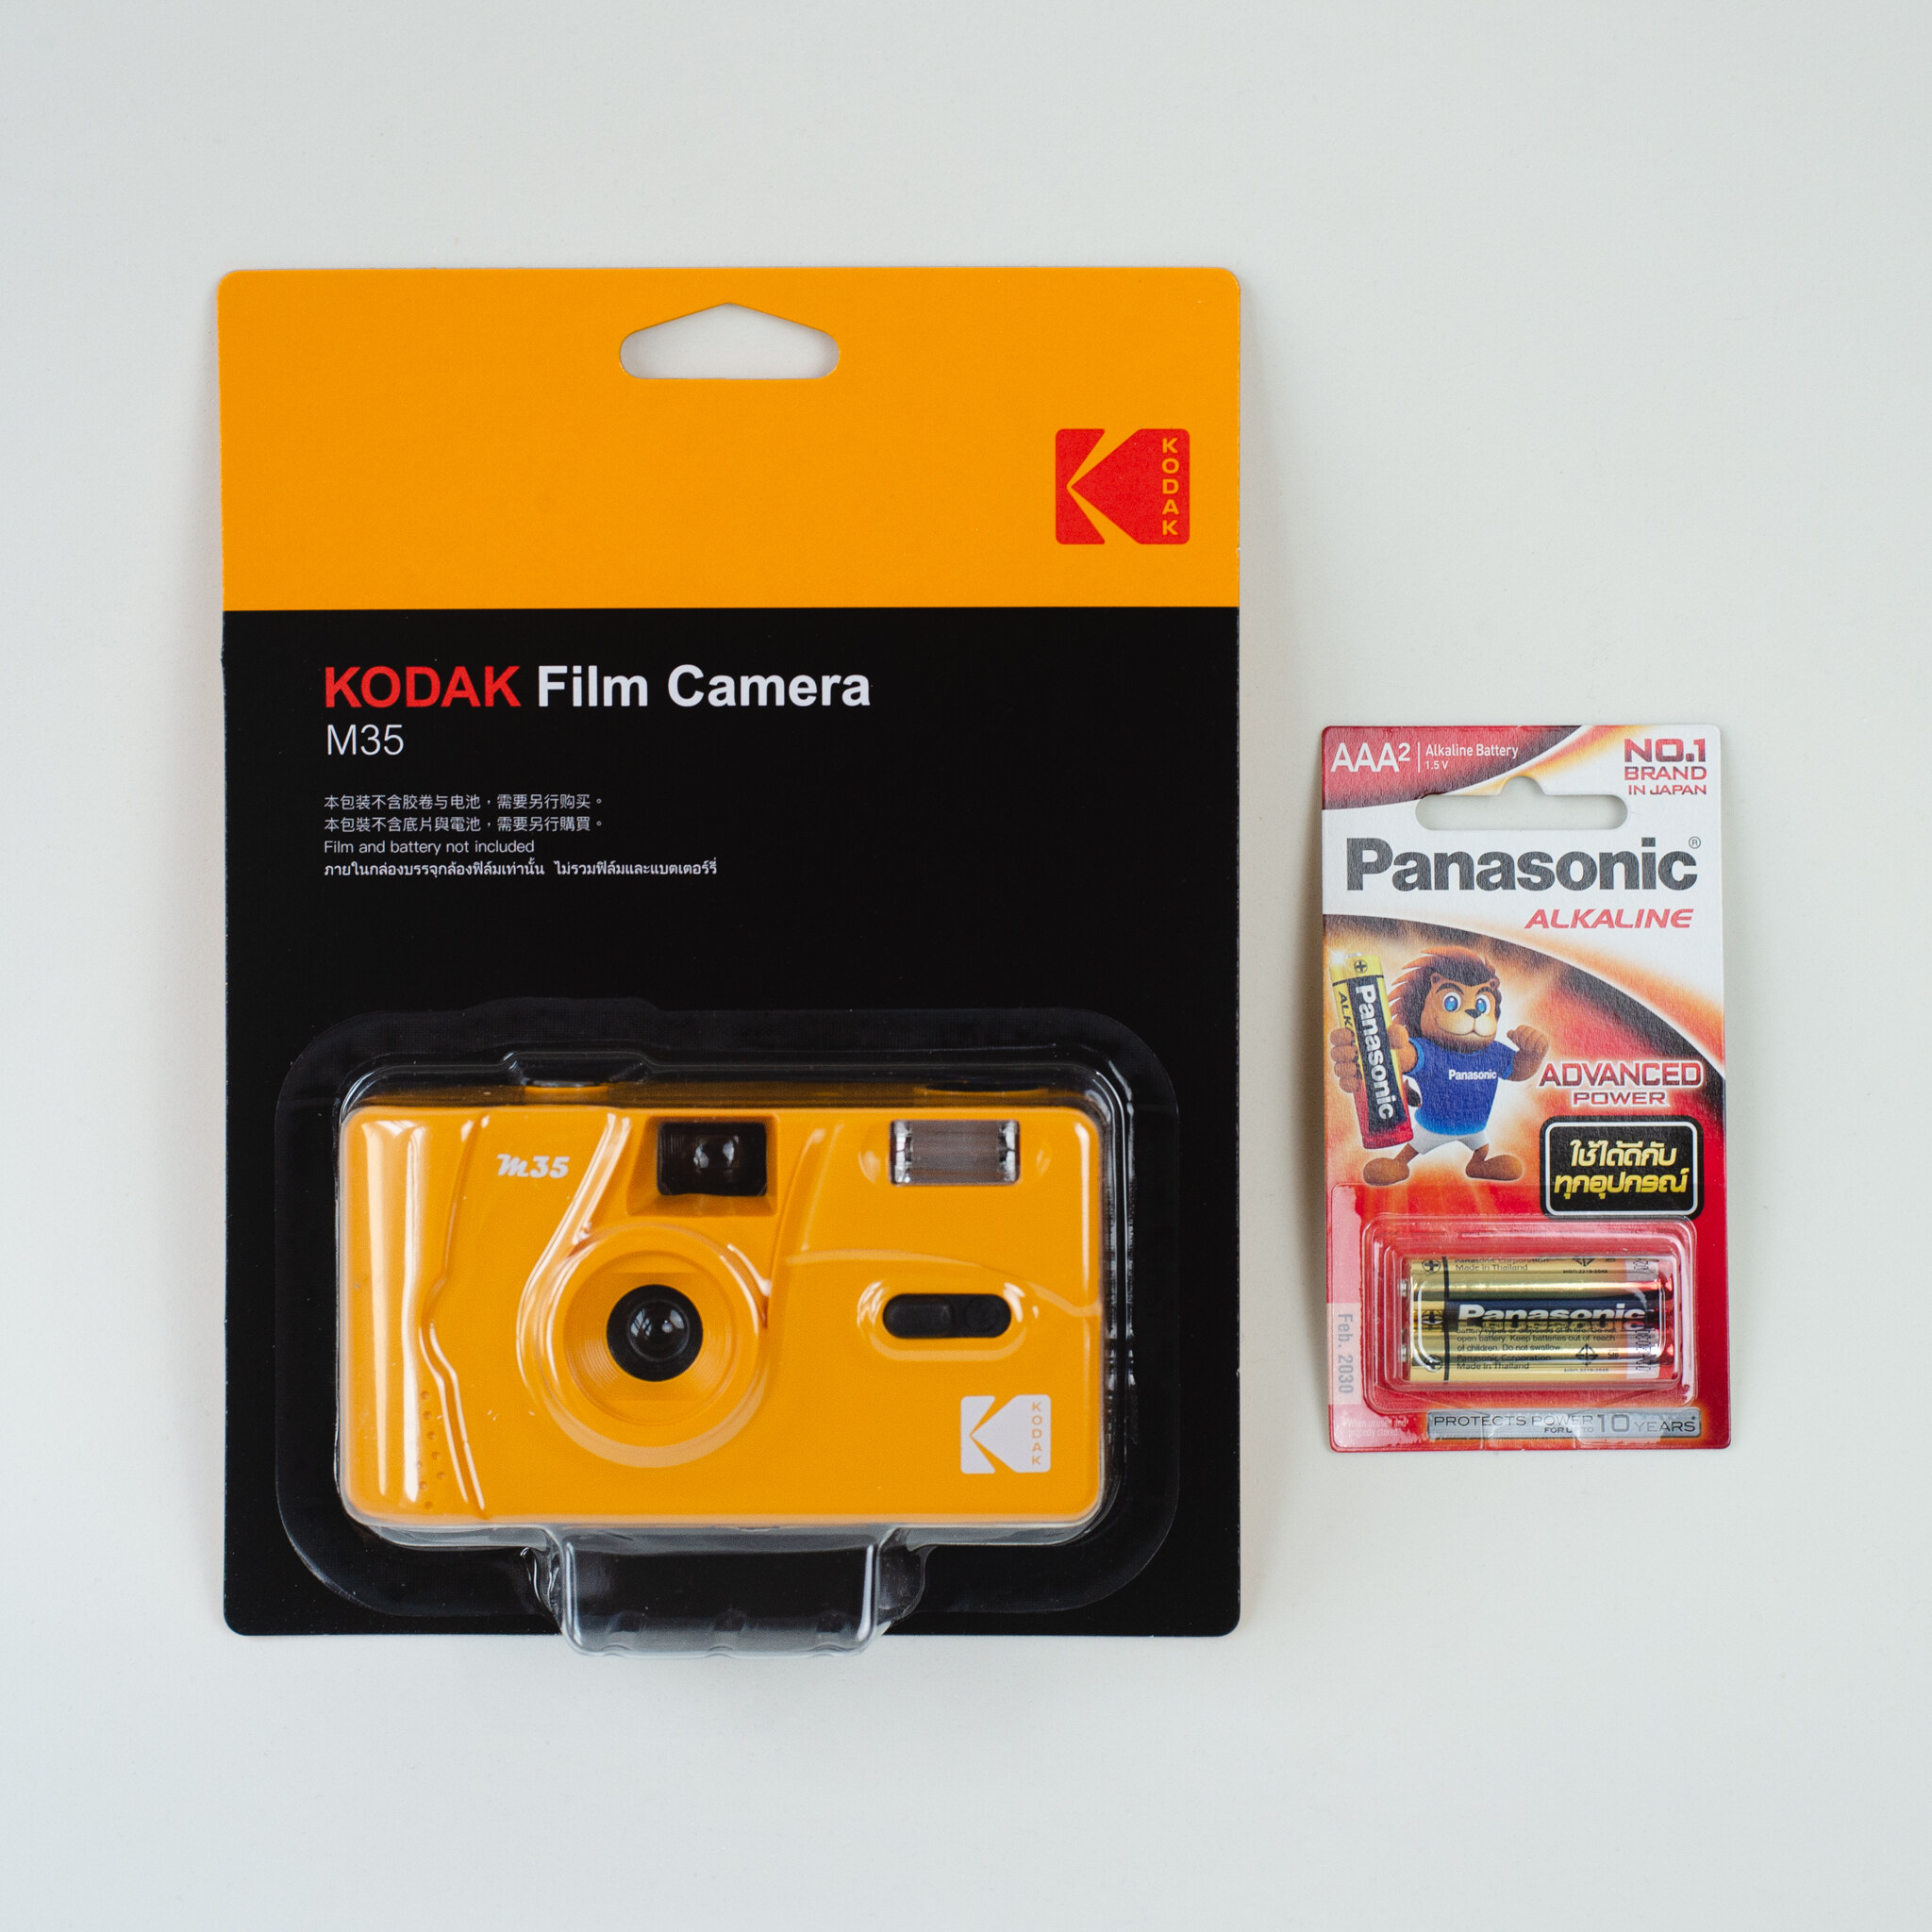 กล้องฟิล์ม Kodak m35 , m38 + ถ่านอัลคาไลน์ AAA พร้อมส่ง❗️Camera film 35มม